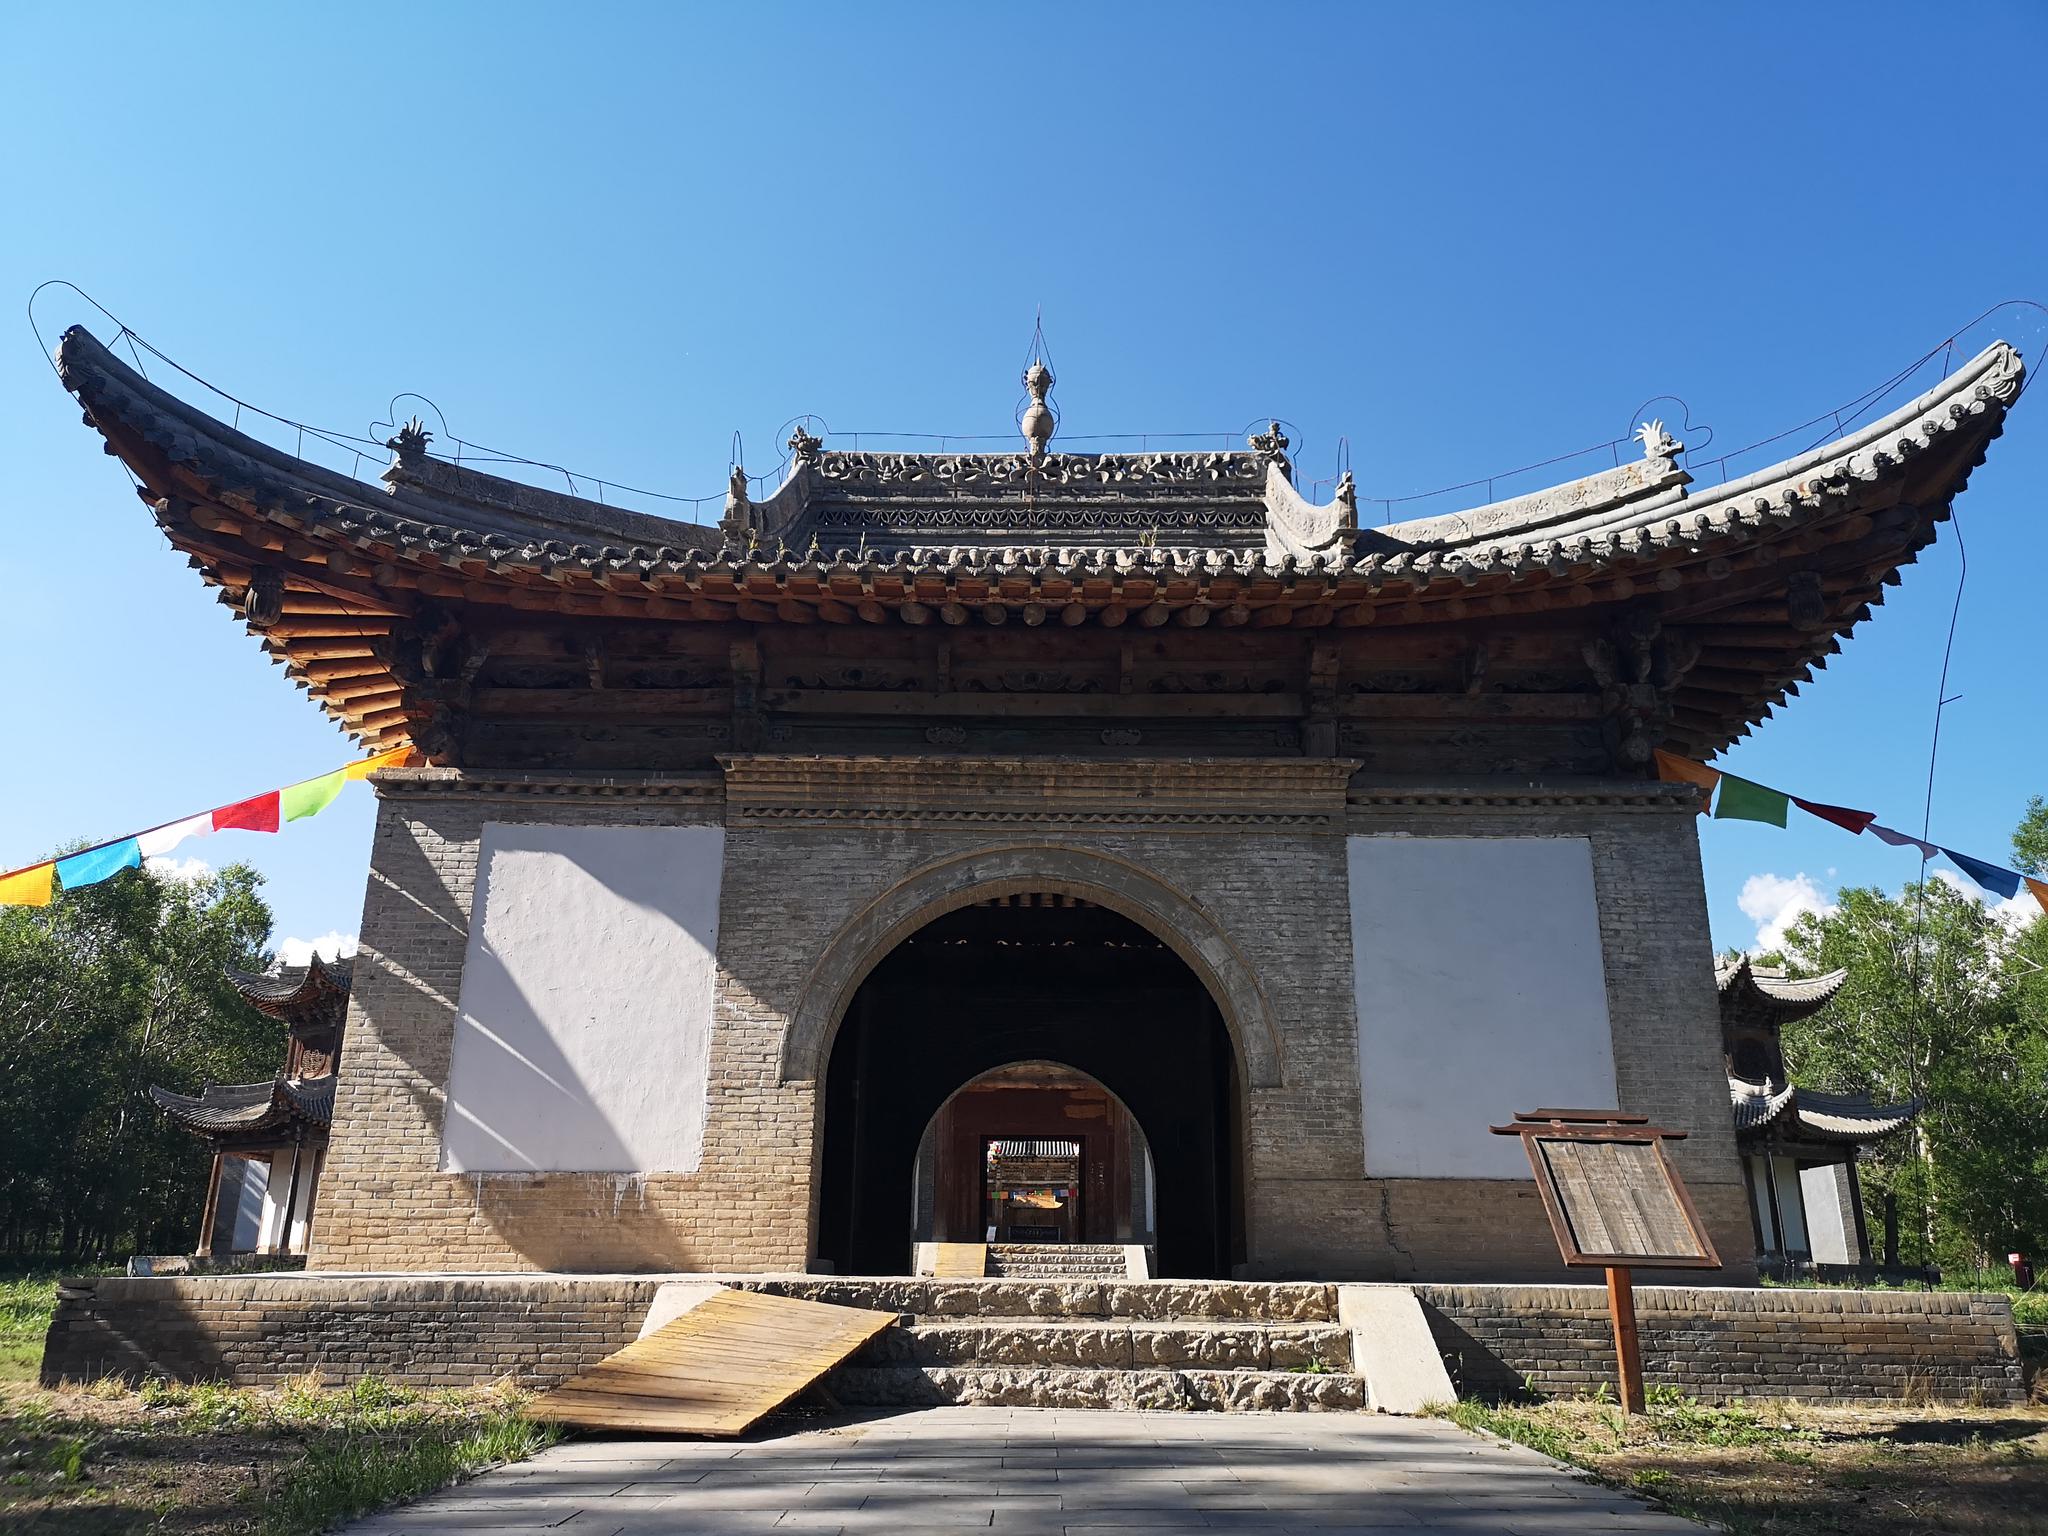 大召——内蒙古地区藏传佛教的活动中心-国宝建筑-图片